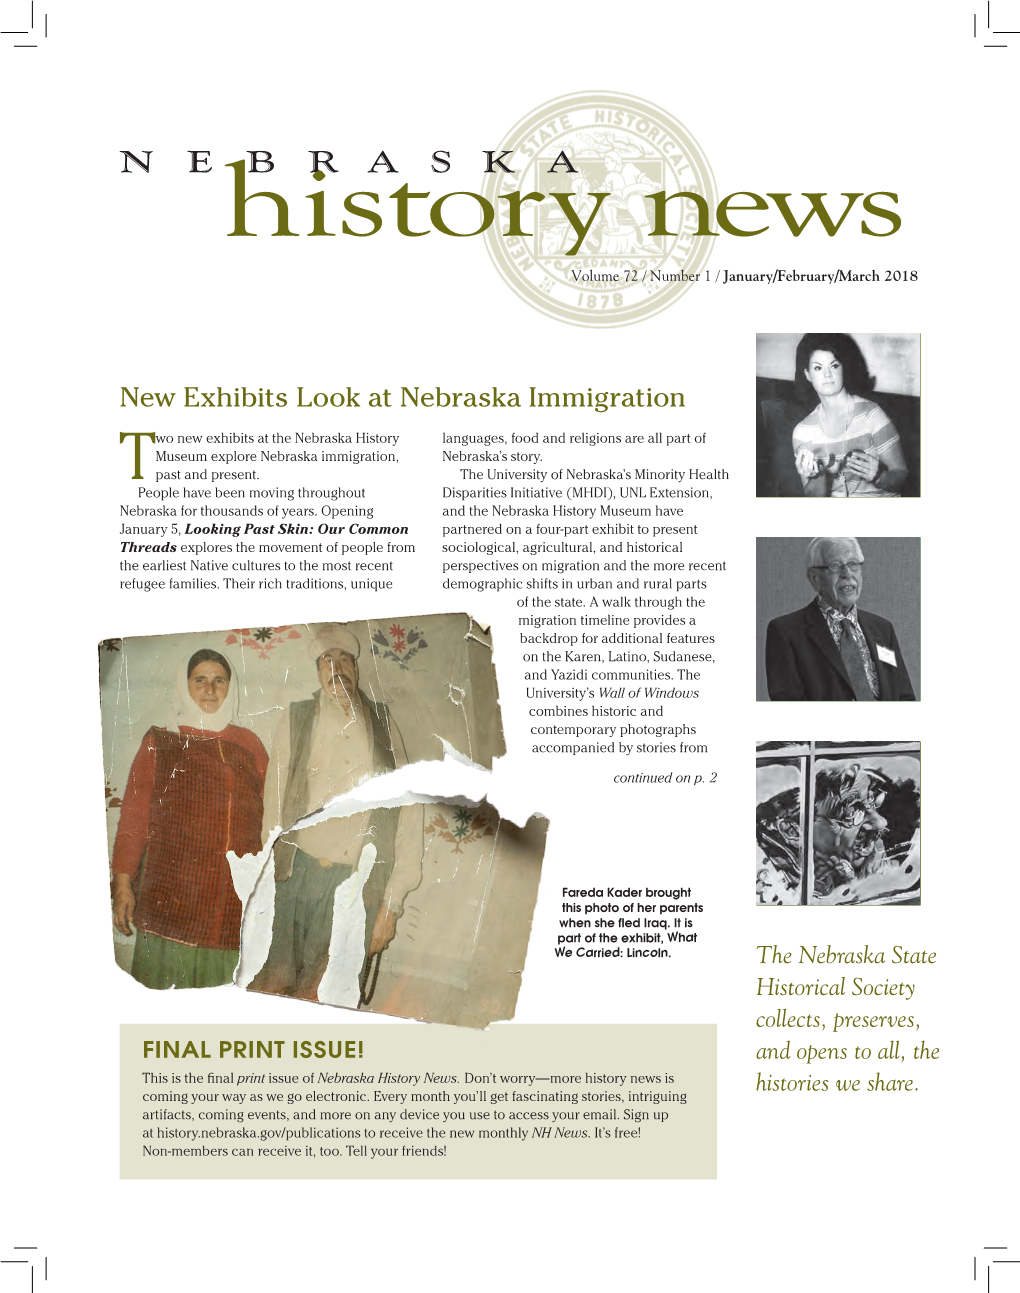 New Exhibits Look at Nebraska Immigration